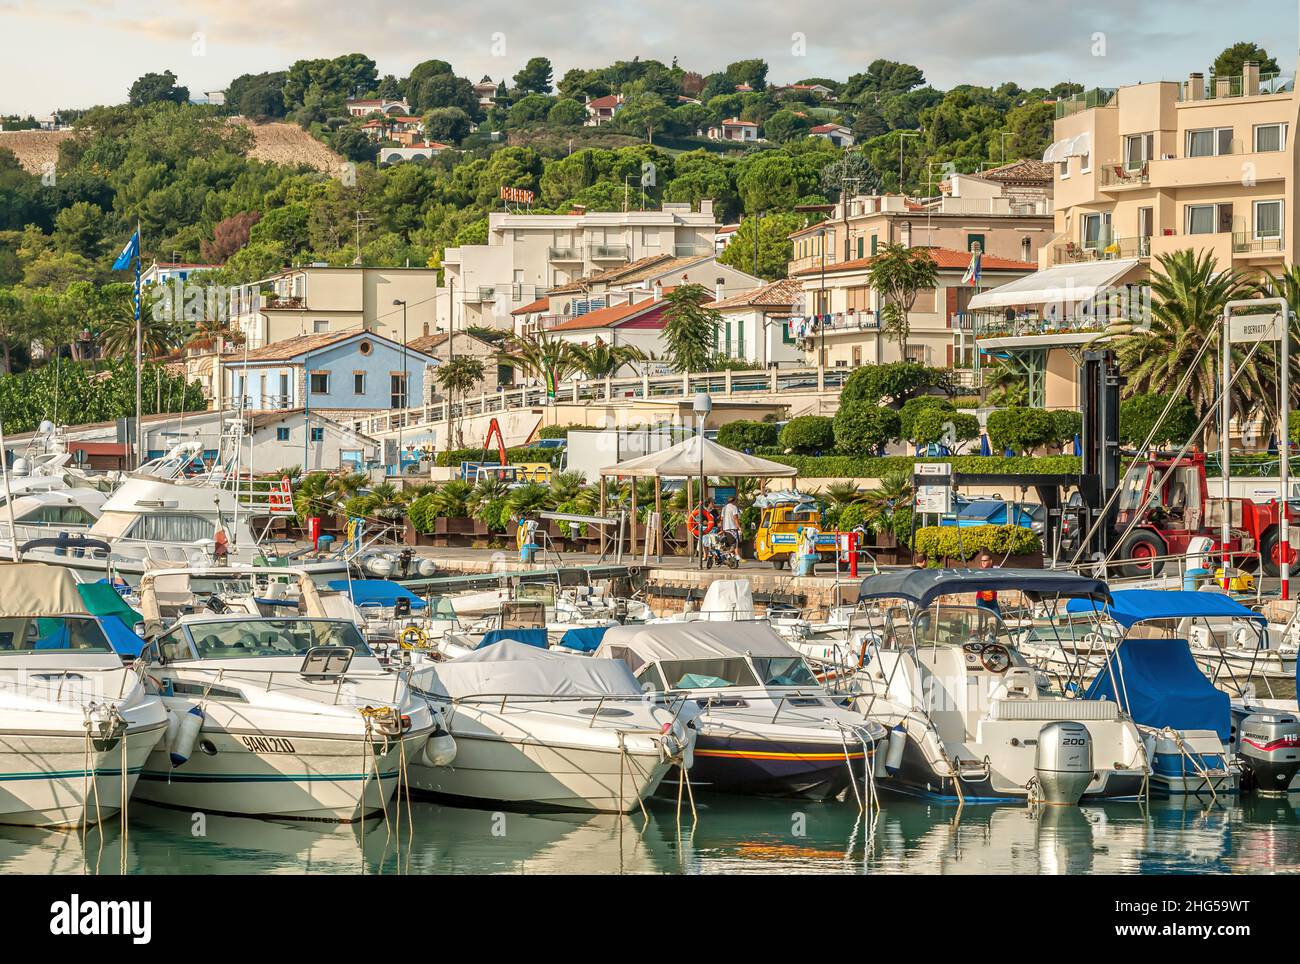 Bateaux à moteur et yachts à voile à la marina de Numara, Marche, Italie Banque D'Images